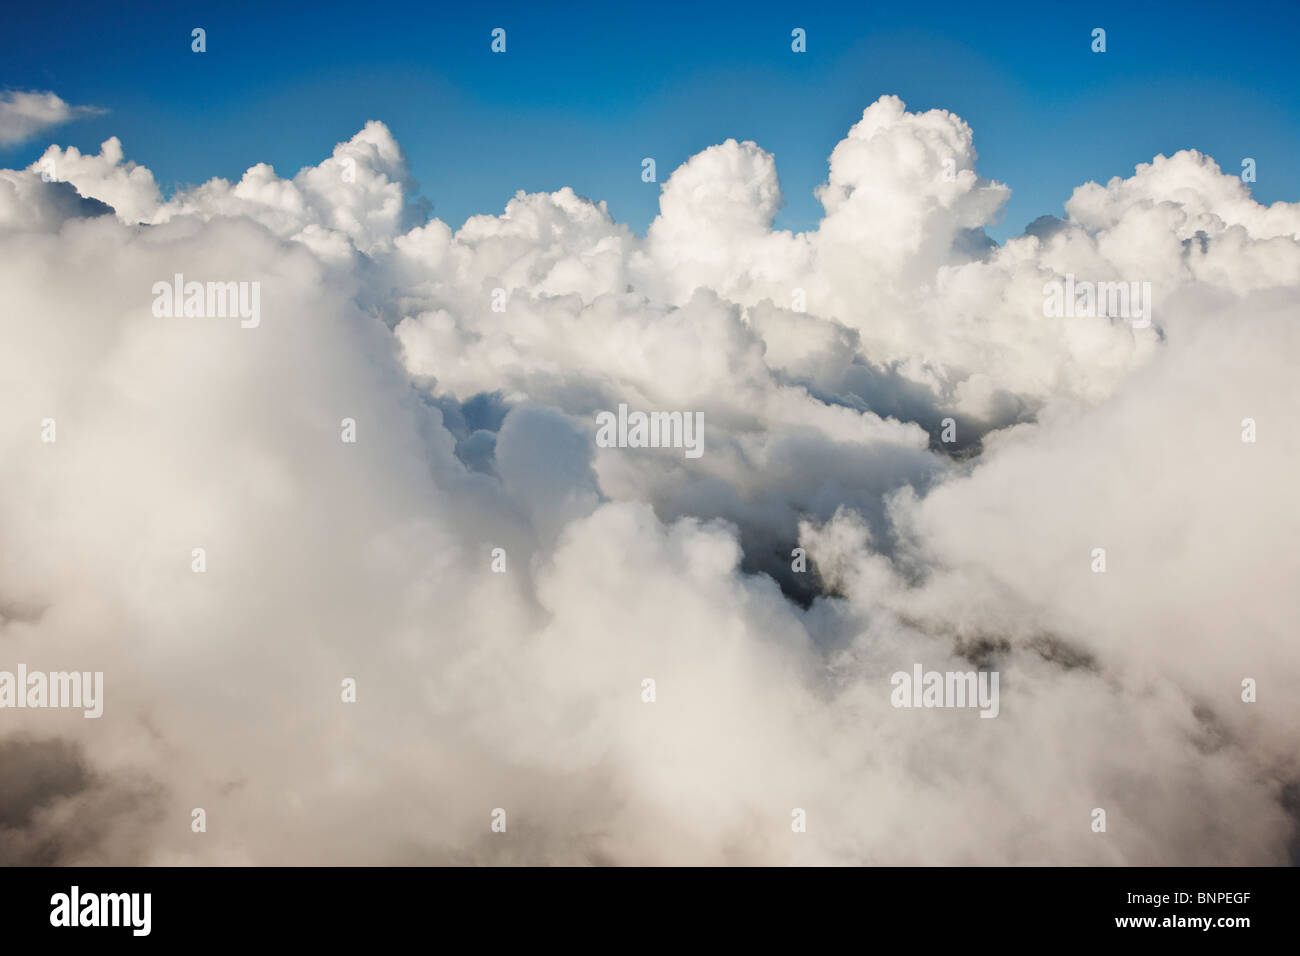 Diese Wolken werden häufig als "puffy" beschrieben und erscheinen meist in Gruppen Stockfoto